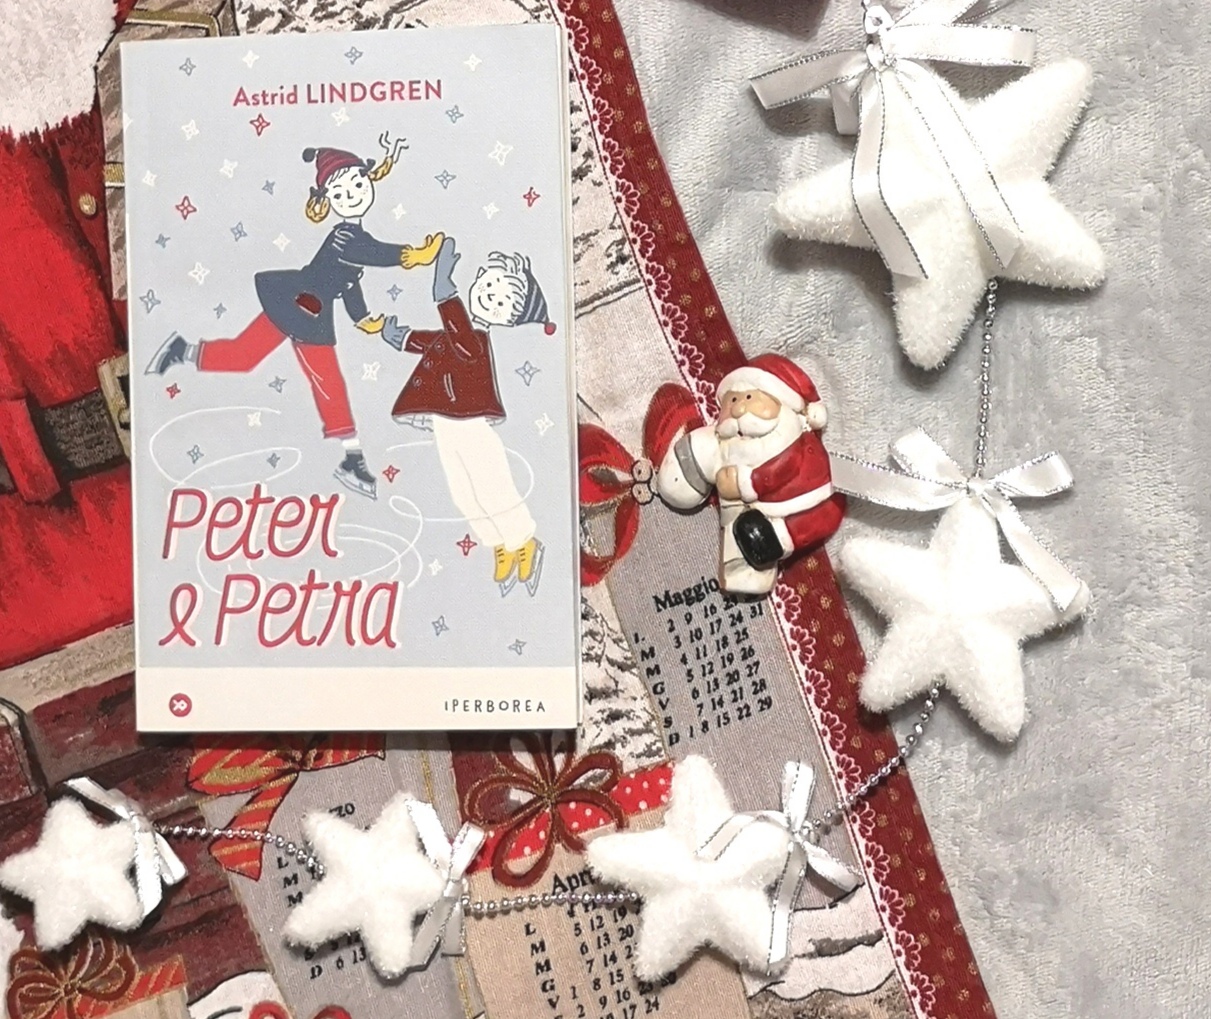 La Stella Di Natale Racconto.Peter E Petra 7 Racconti Di Astrid Lindgren Ascoltando Le Figure